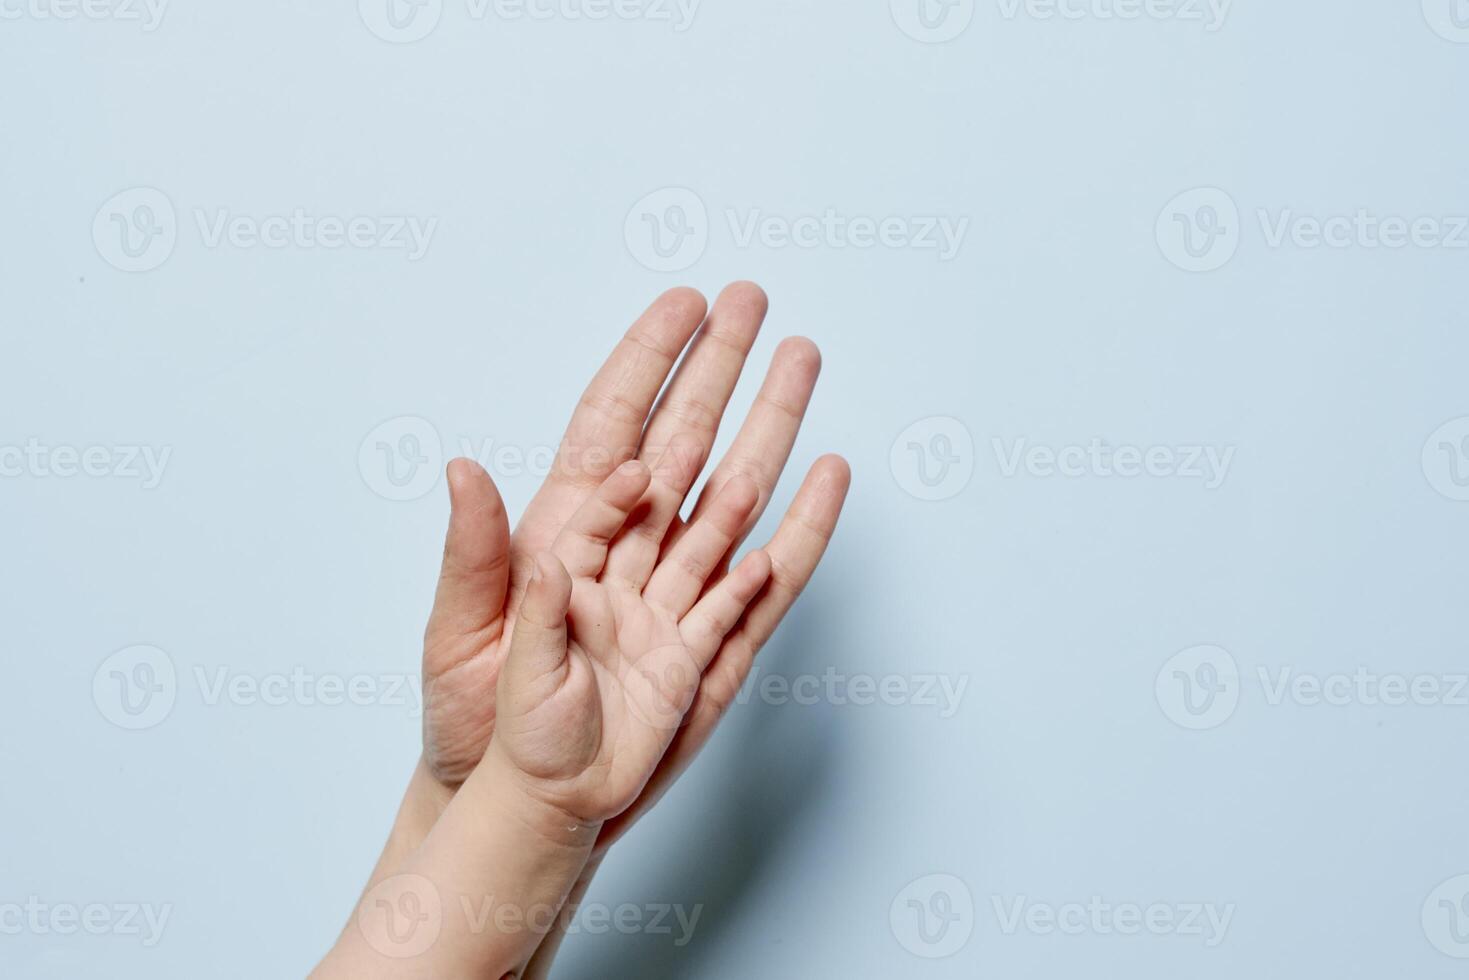 adulto e bebê mão juntos foto